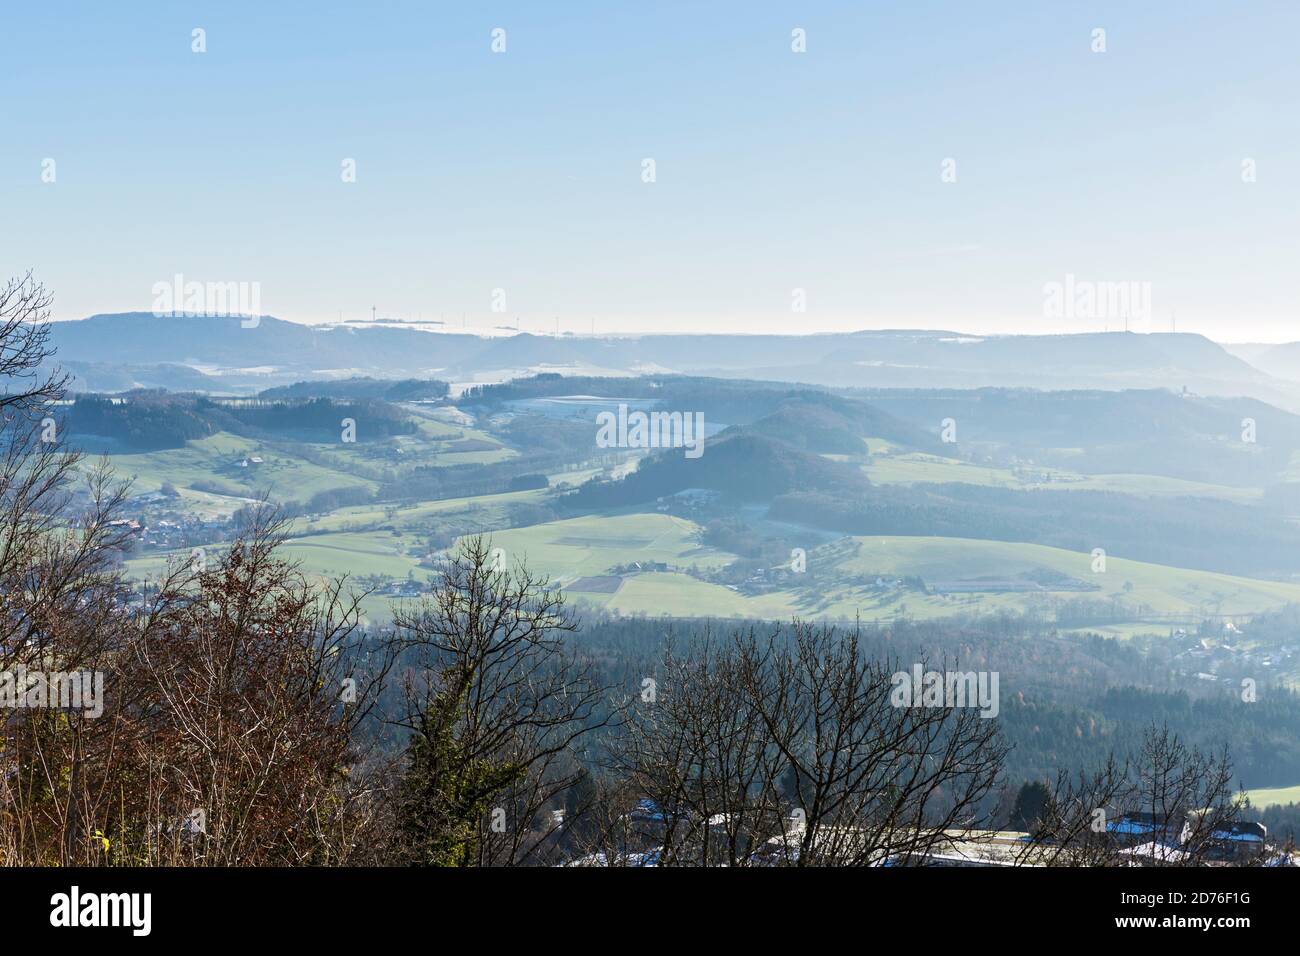 Stauferland, Landschaft, Überblick, Hügel, Ortschaften, Wald, Felder Stock Photo